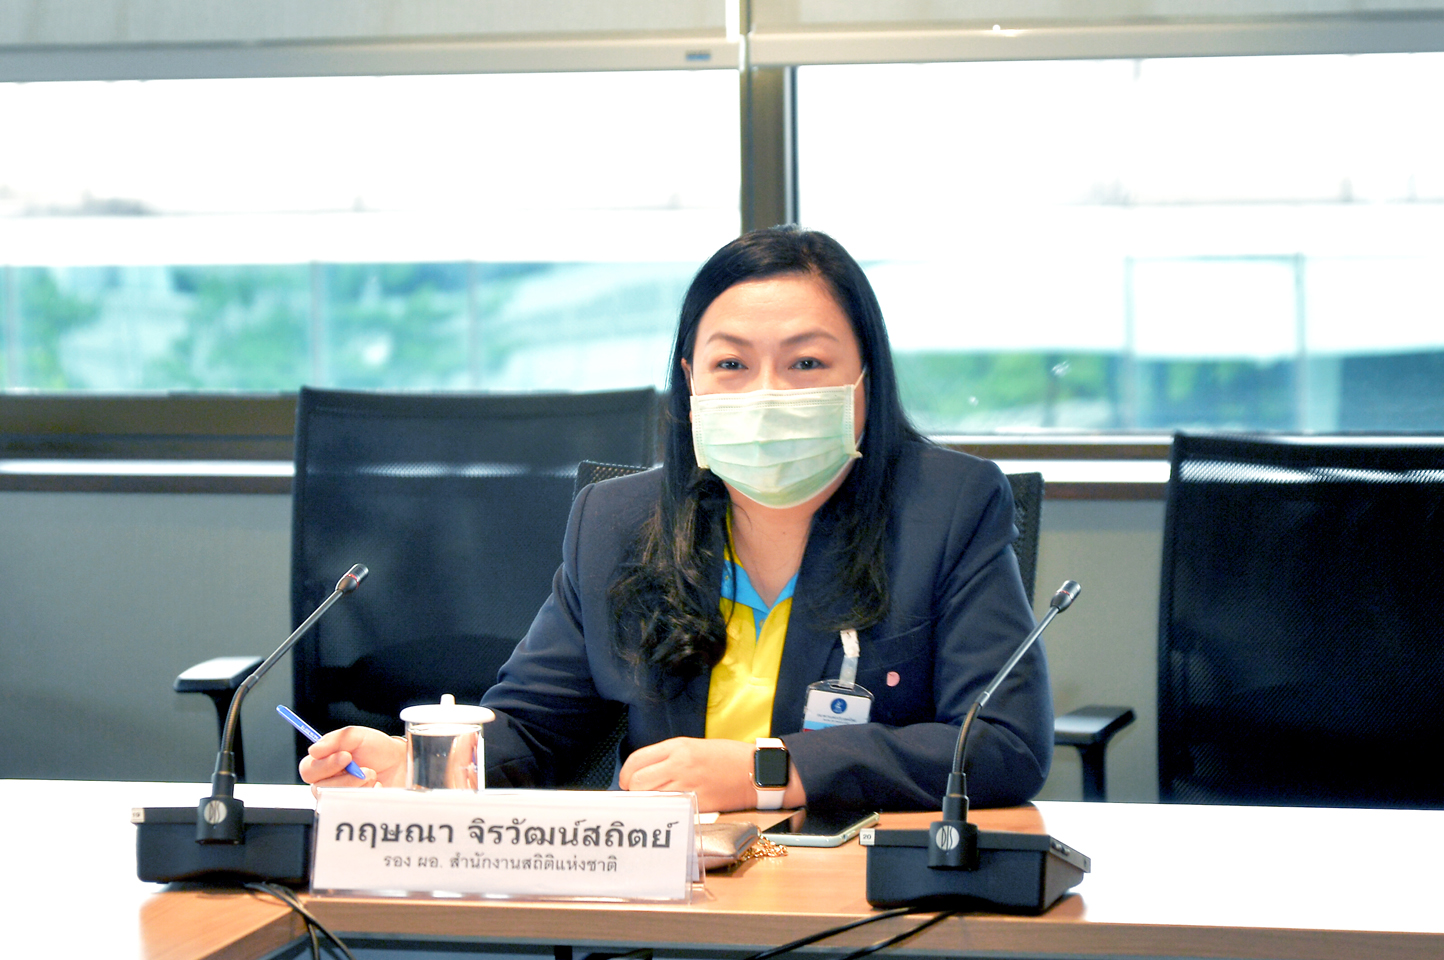 ประชุมหารือการจัดทำบันทึกข้อตกลงความร่วมมือ (MOU) ระหว่างสำนักงานสถิติแห่งชาติ และ ธนาคารแห่งประเทศไทย